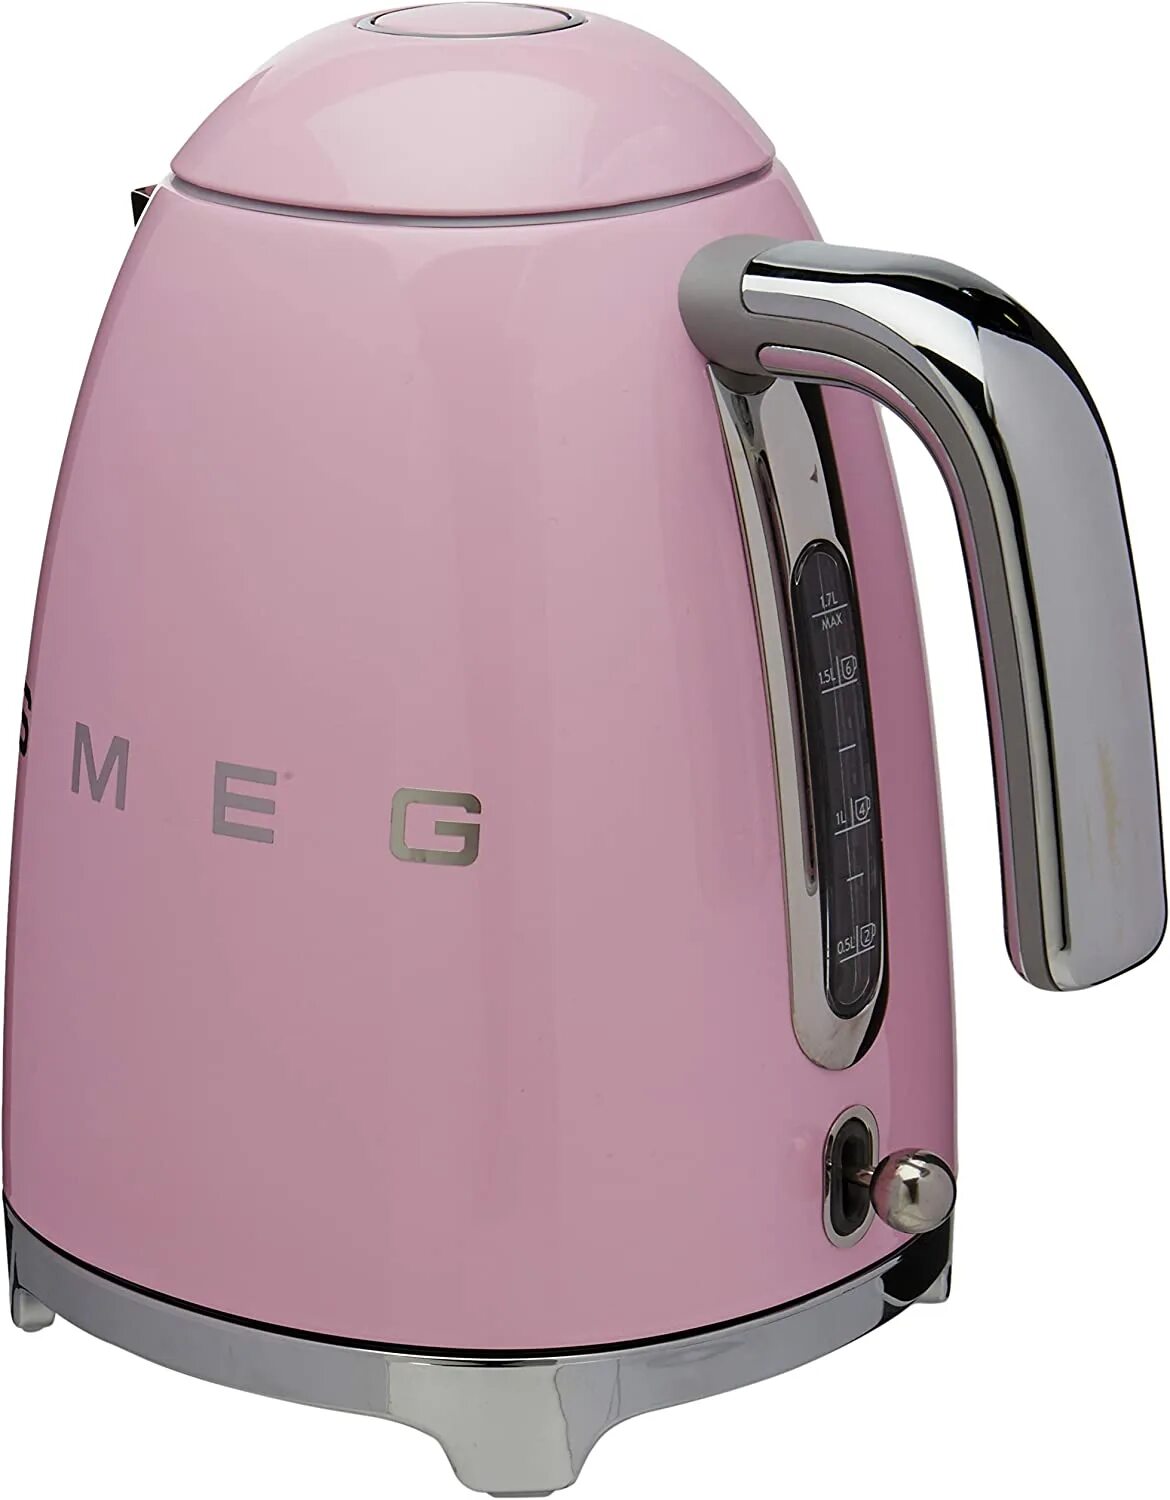 Фирма smeg. Чайник Smeg 1.7. Чайник Смег с терморегулятором. Смег чайник газовый. Чайник Смег розовый.